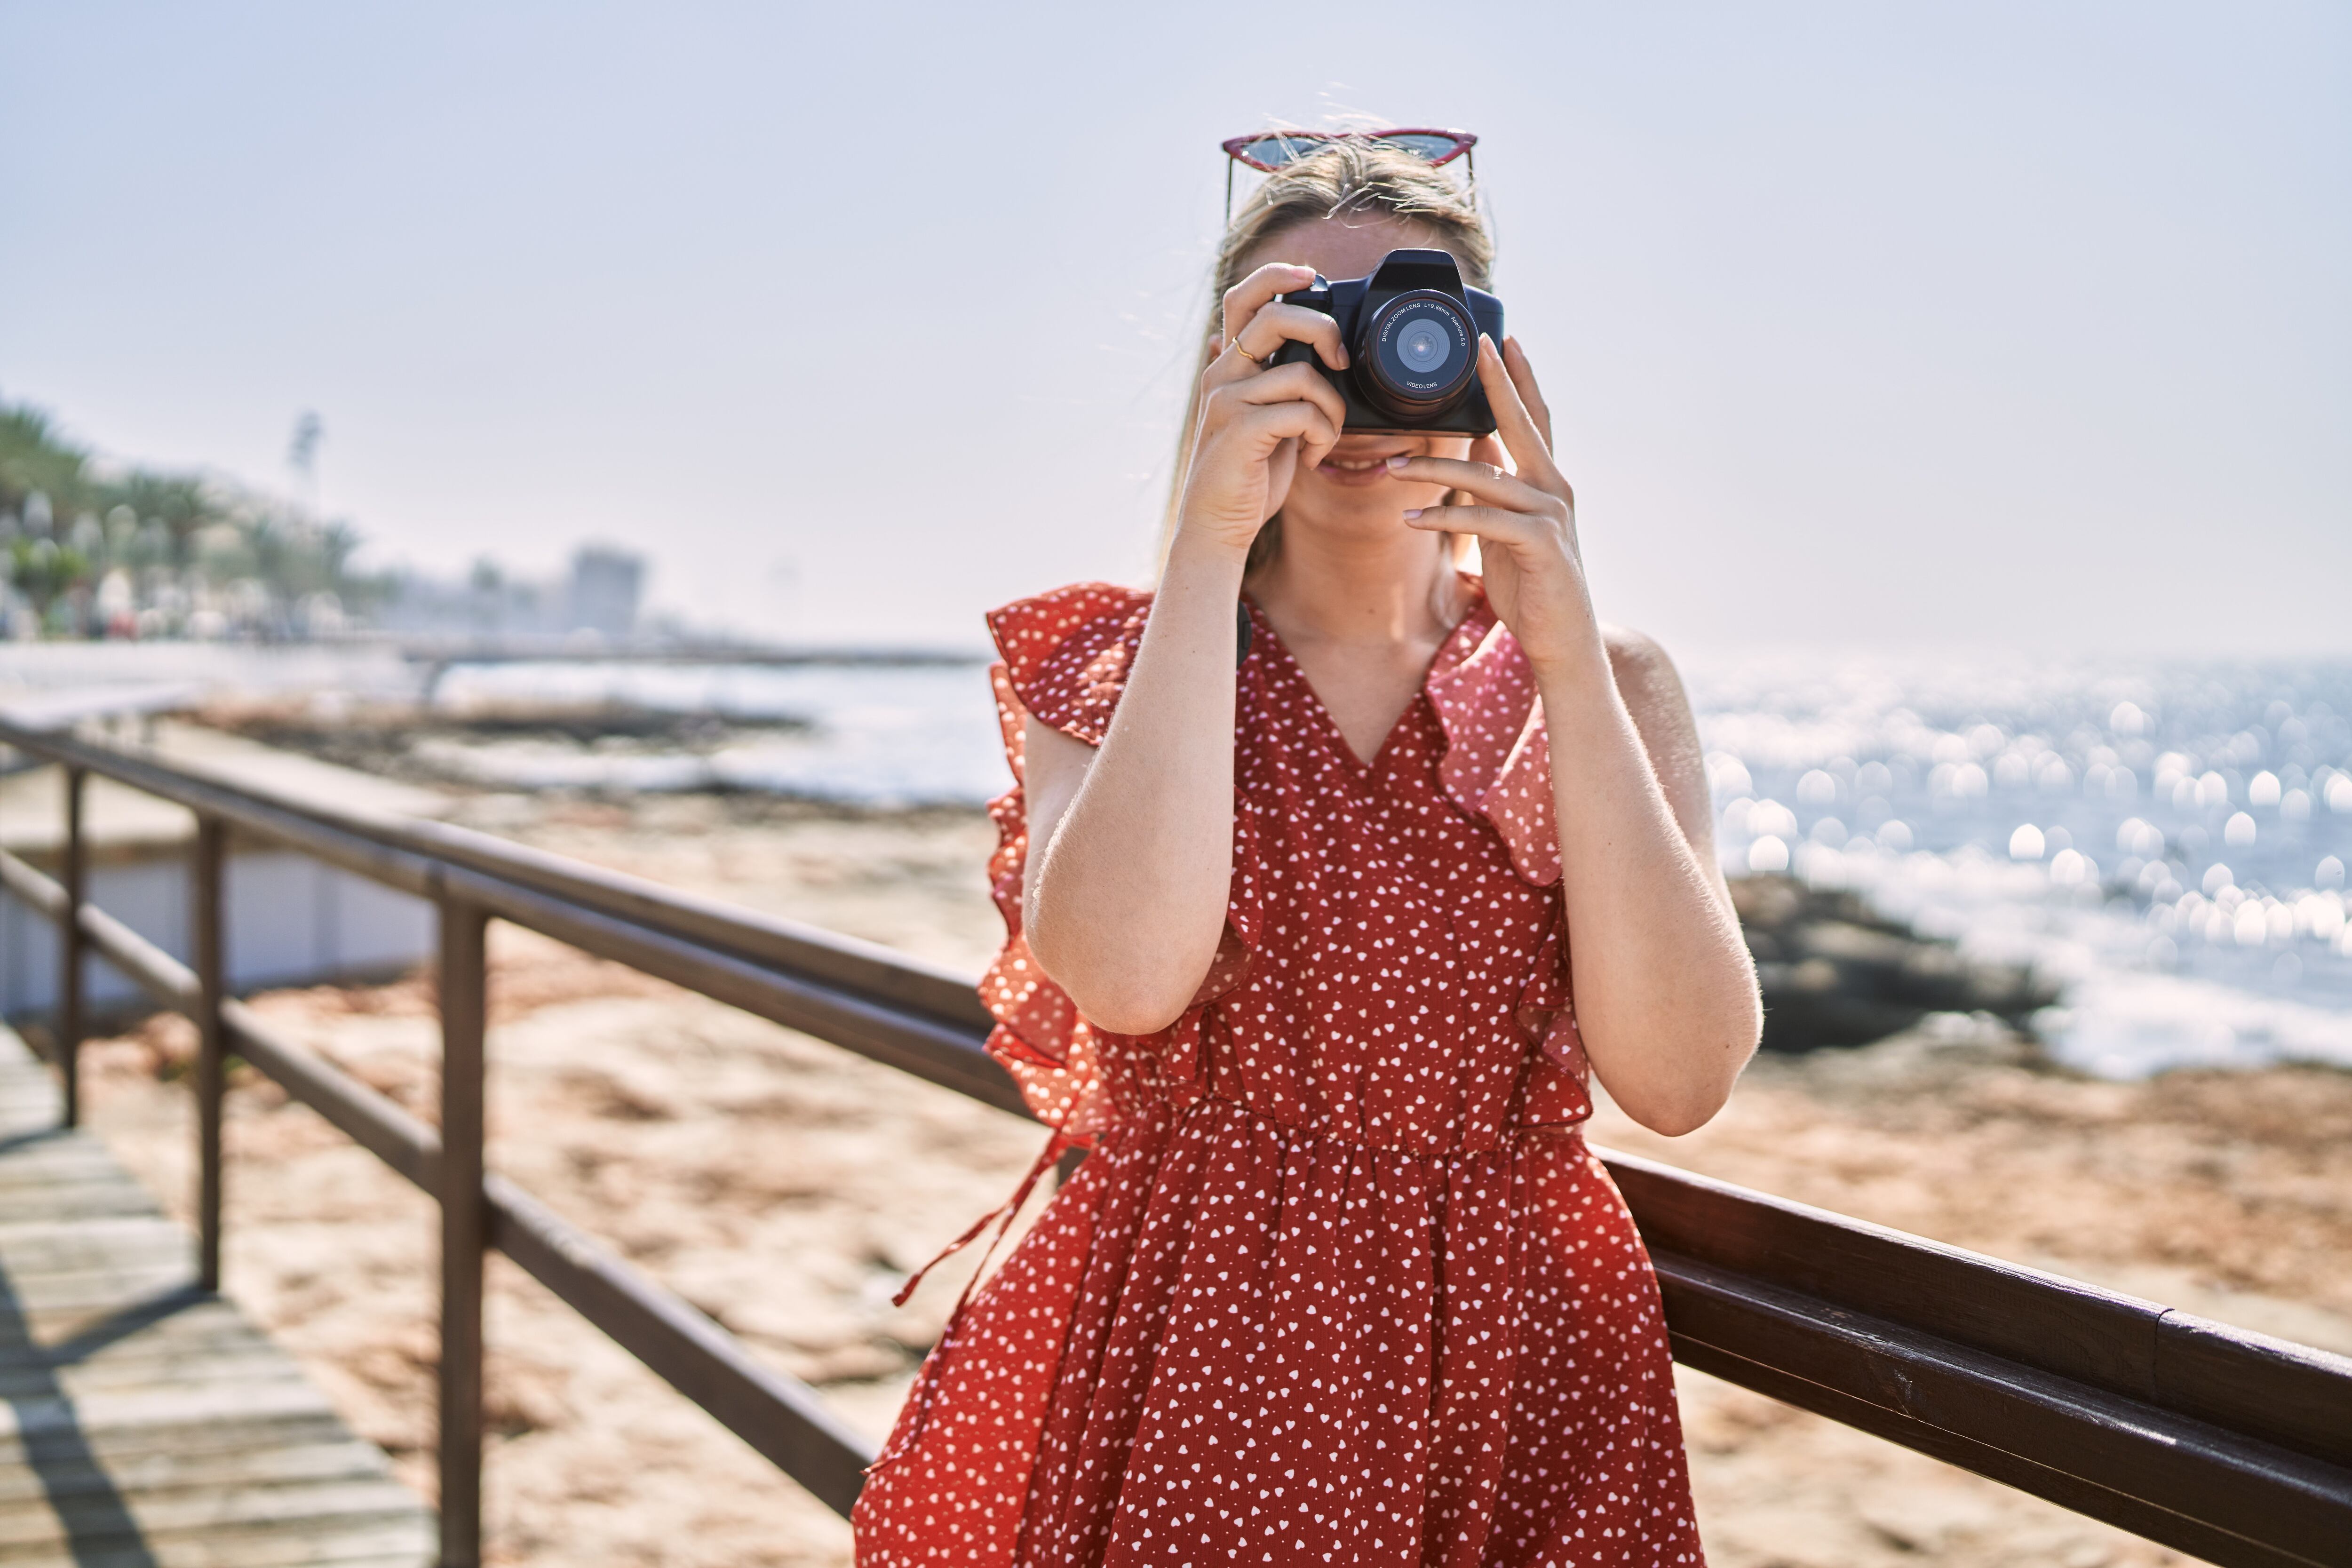 El uso de las cámaras digitales ha sido sustituido por las opciones múltiples que ofrecen los teléfonos celulares. A nivel mundial la comercialización de las cámaras digitales ha venido en caída en la última década. Foto Shutterstock.